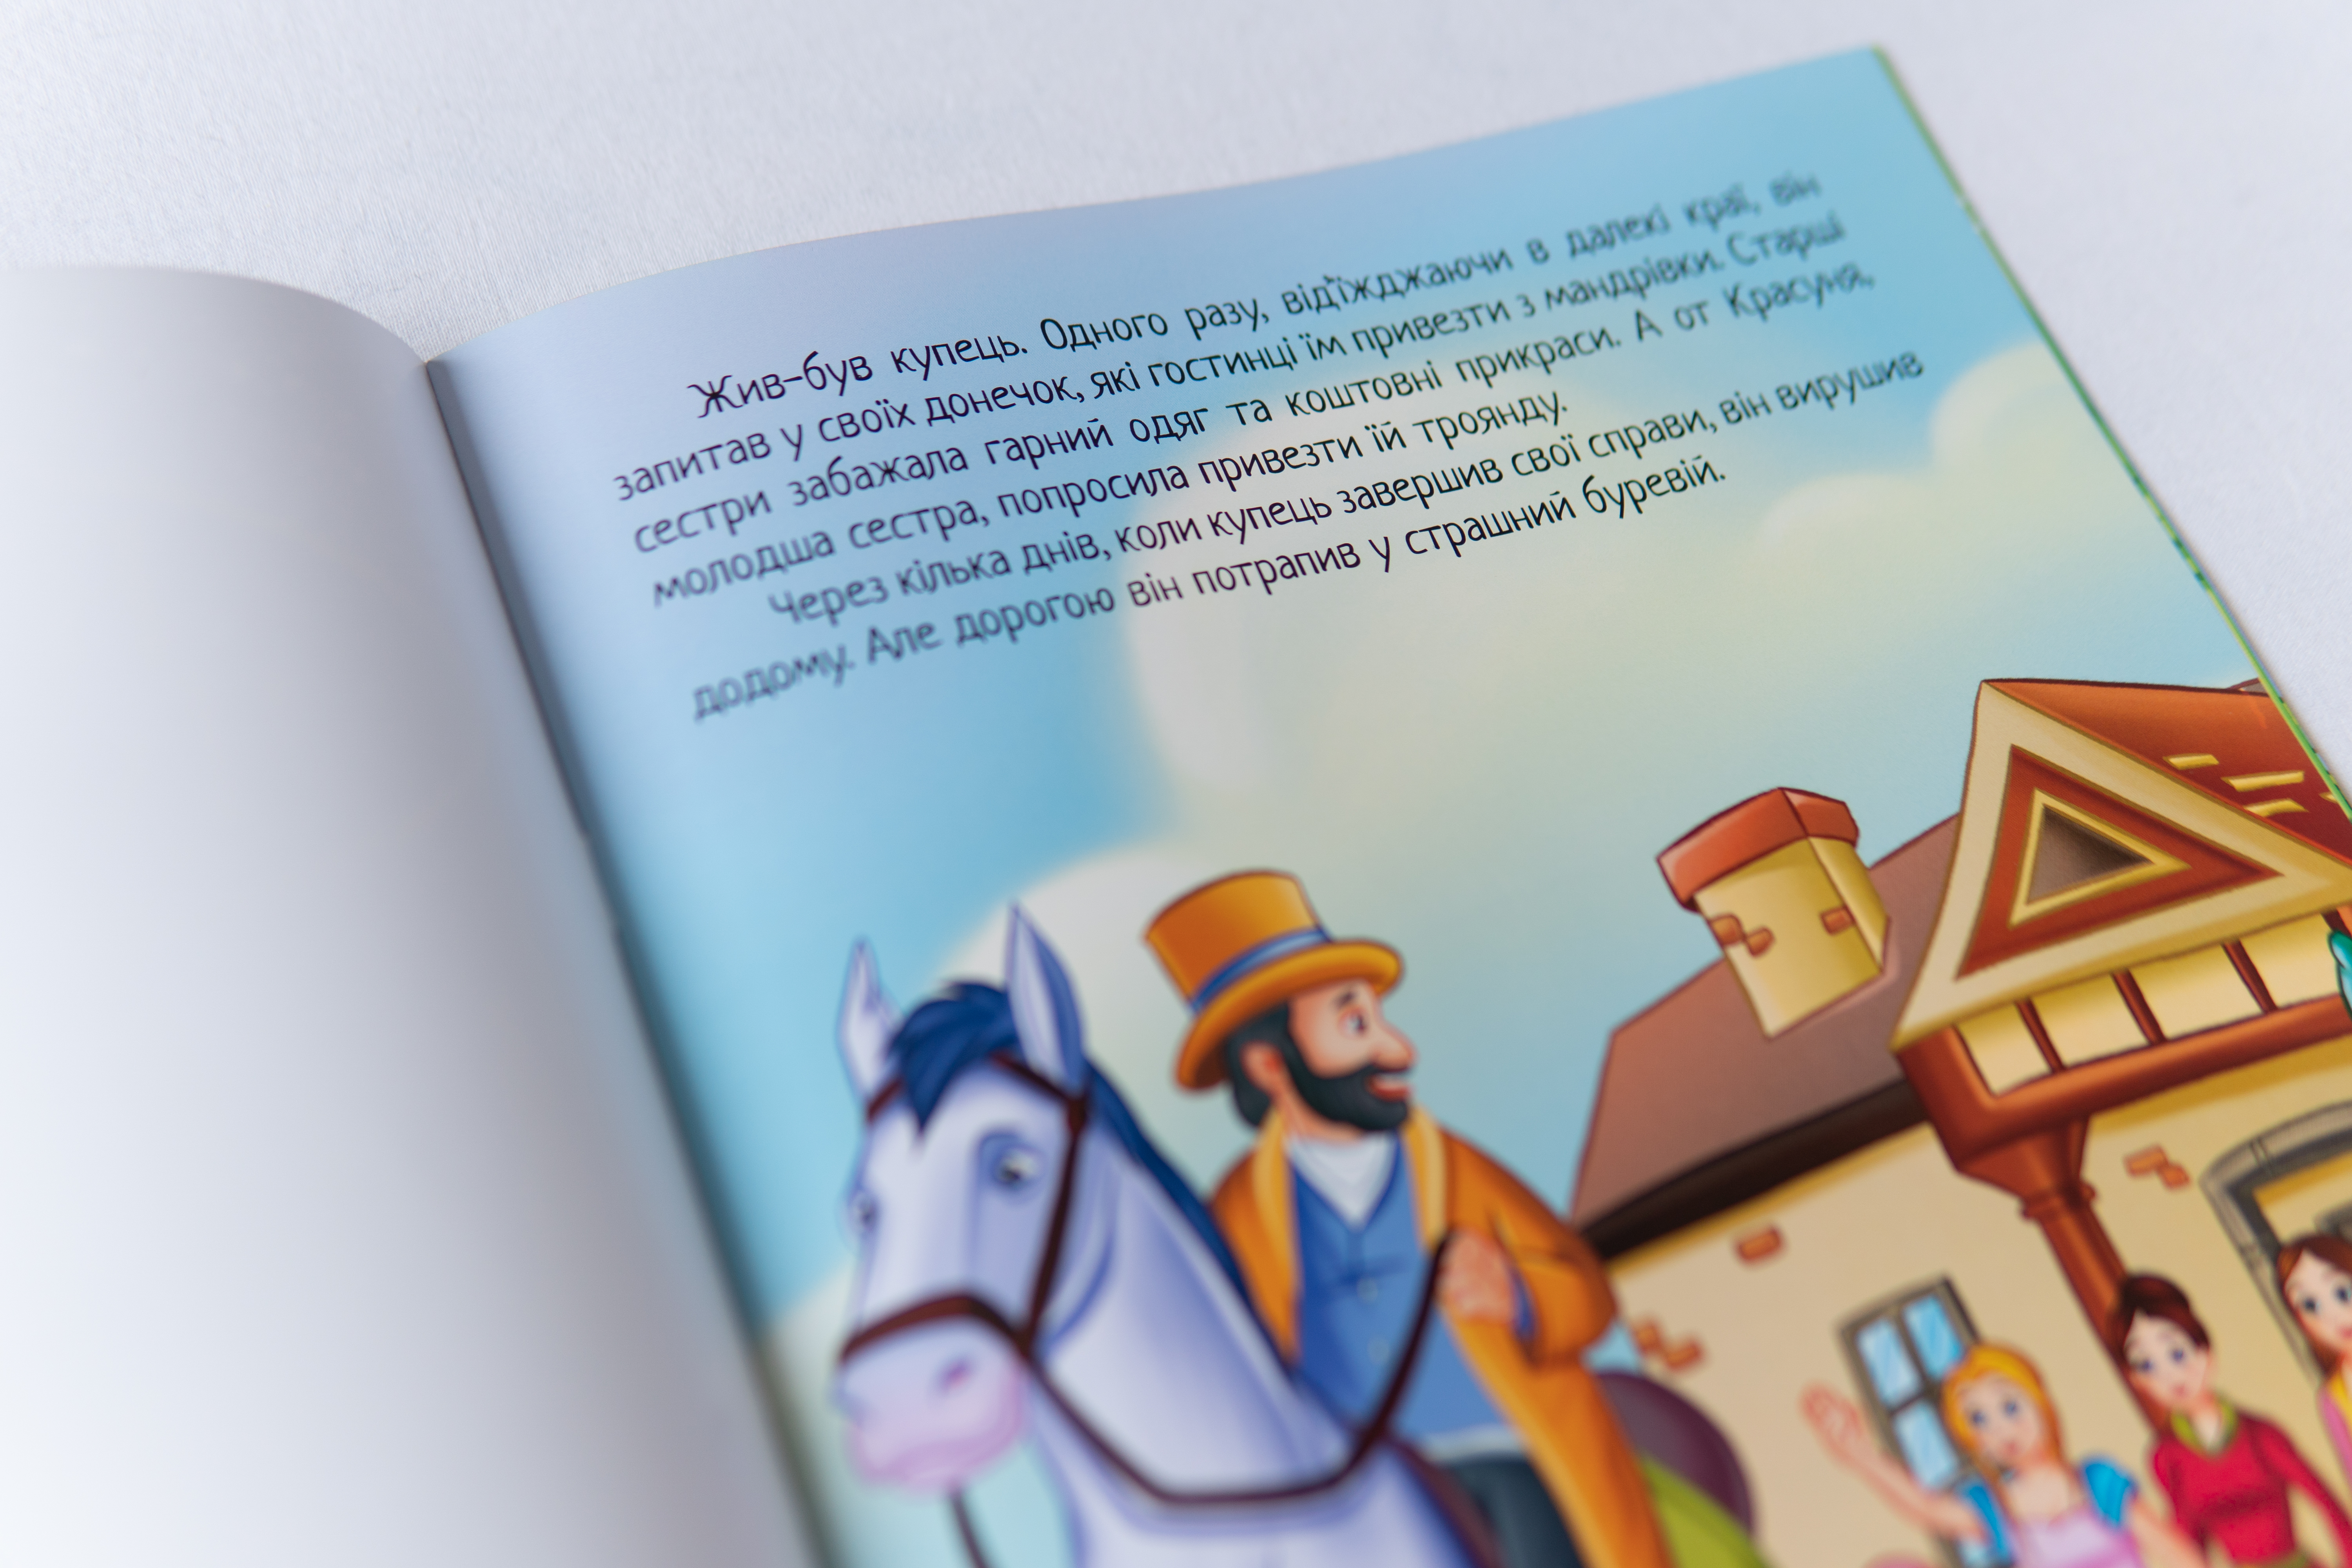 Lieblingsmärchengeschichten Die Schöne und das Biest ist ein Kinderbuch auf Ukrainisch/Lieblingsmärchengeschichten Die Schöne und das Biest ist ein Kinderbuch auf Ukrainisch